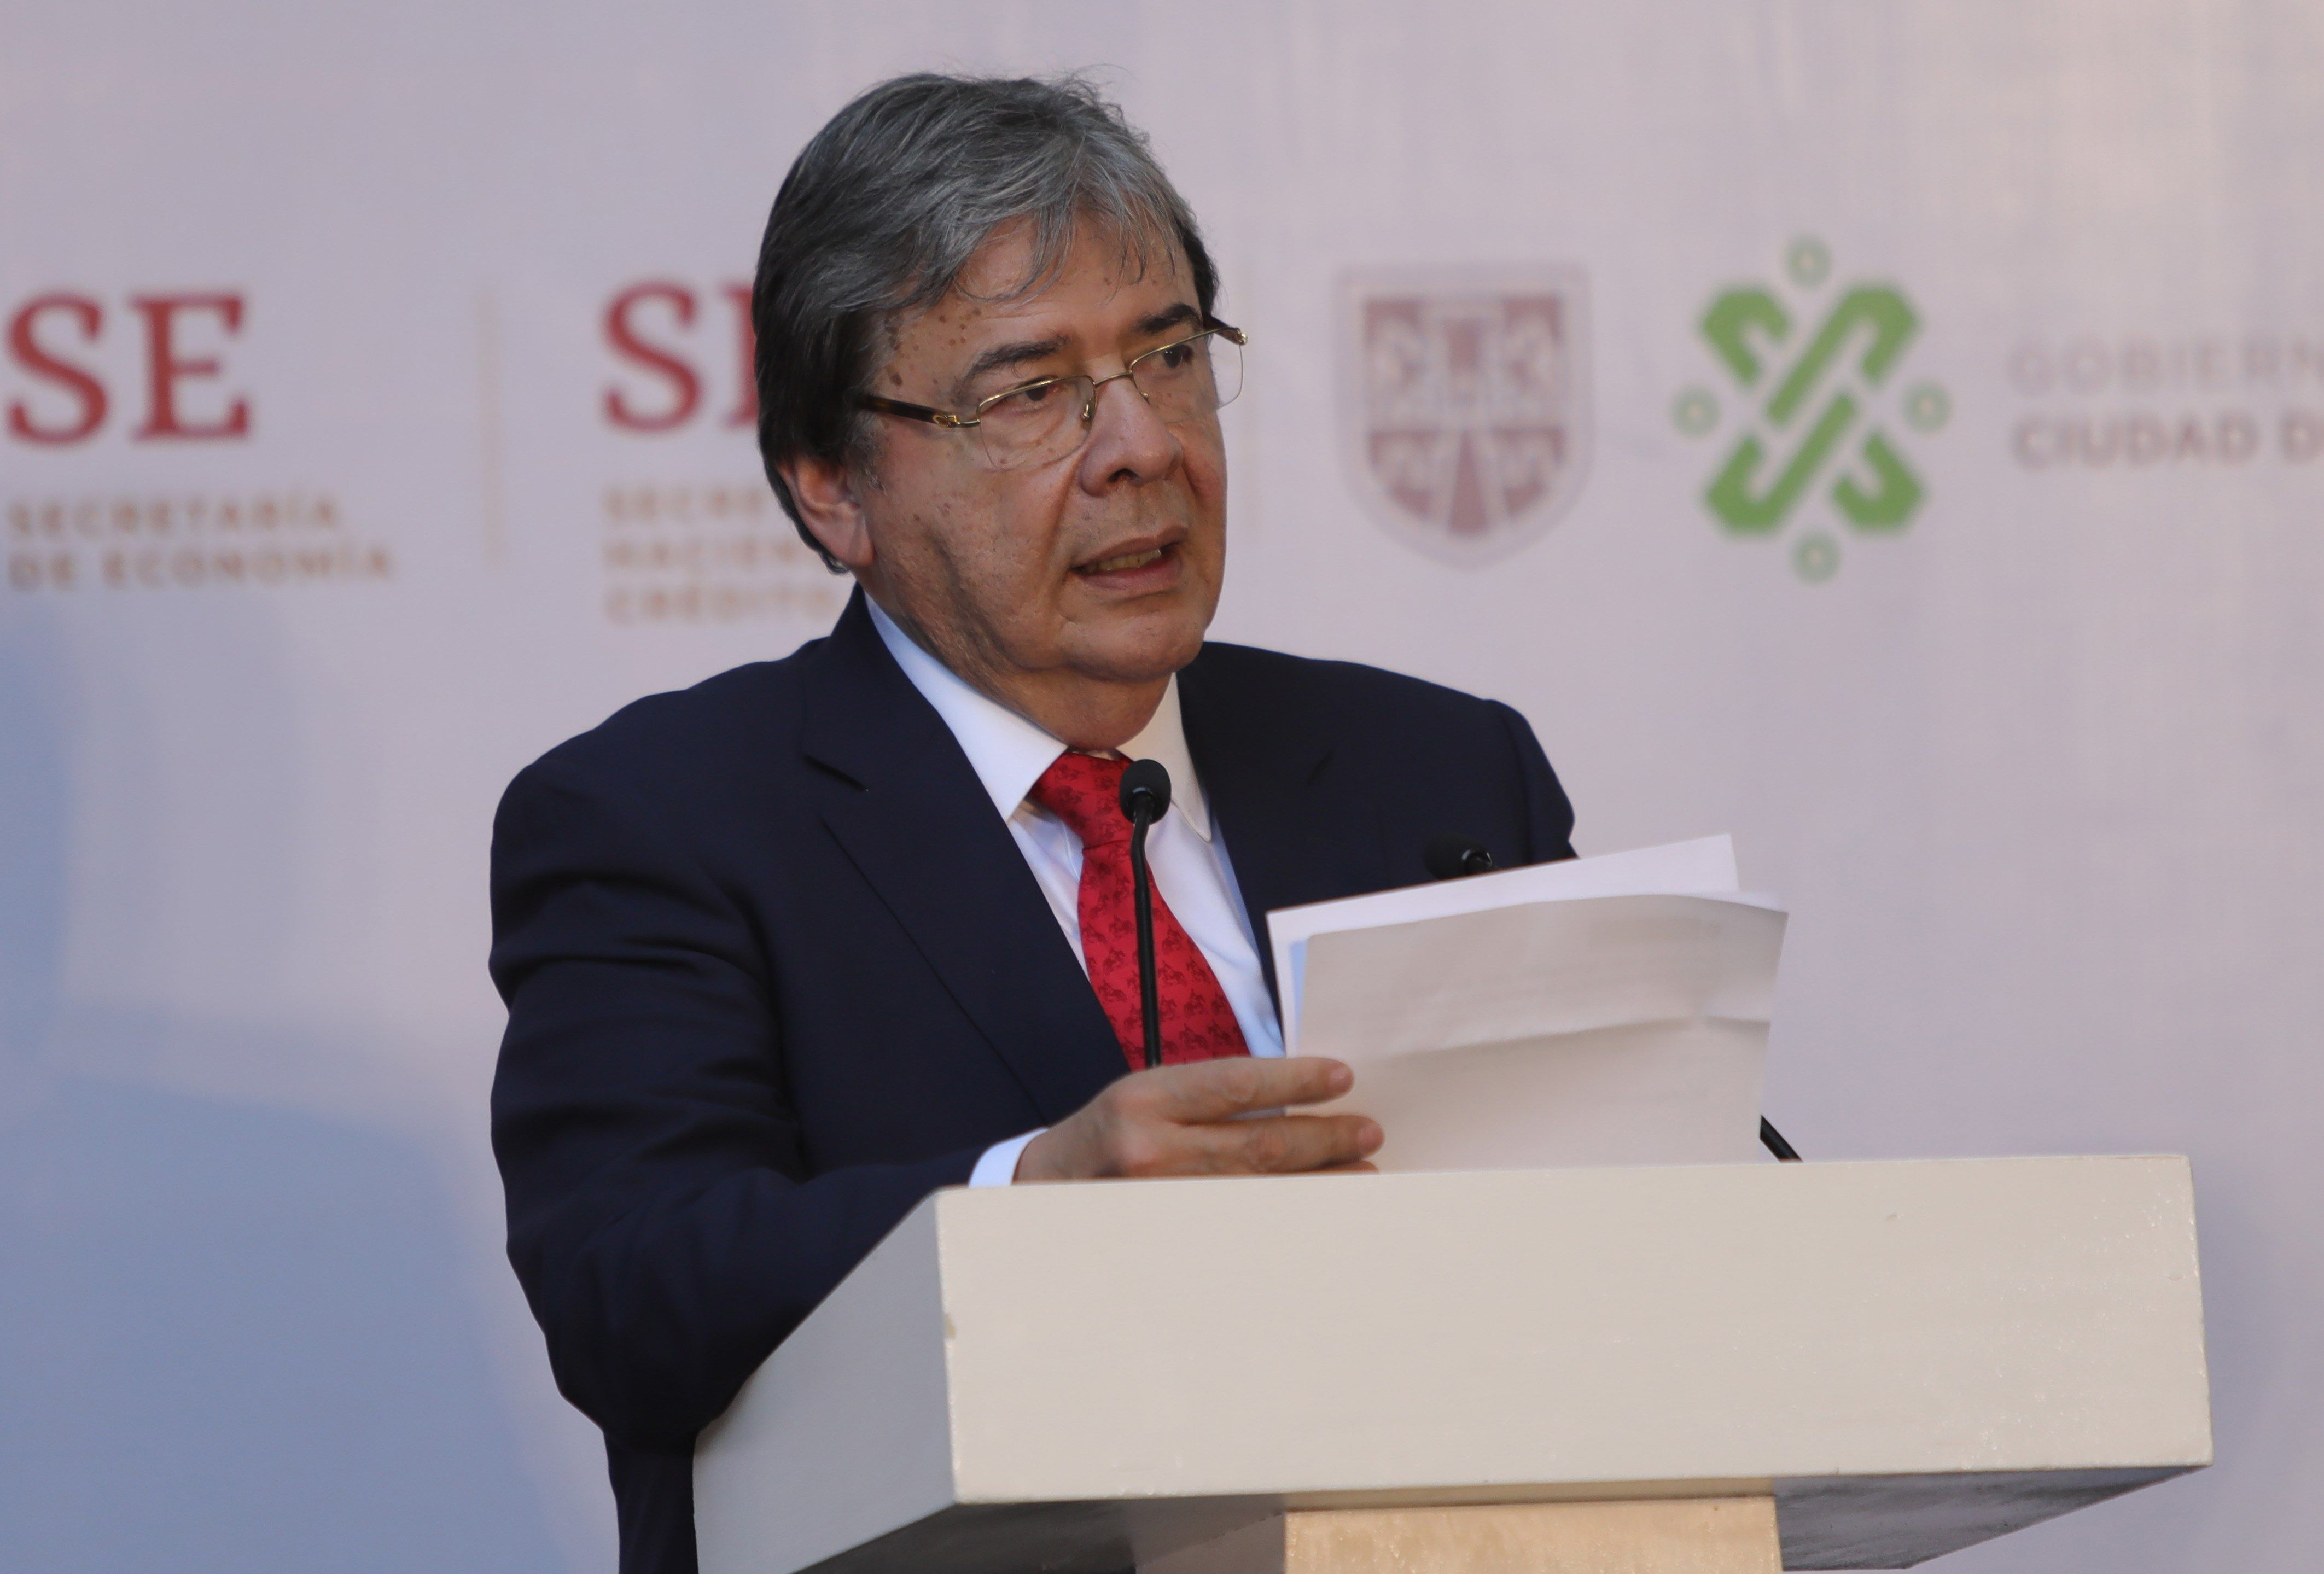 fOTO:El ministro de Relaciones Exteriores de Colombia, Carlos Holmes, en la inauguración del Parque Alianza del Pacífico, 11 mayo 2019